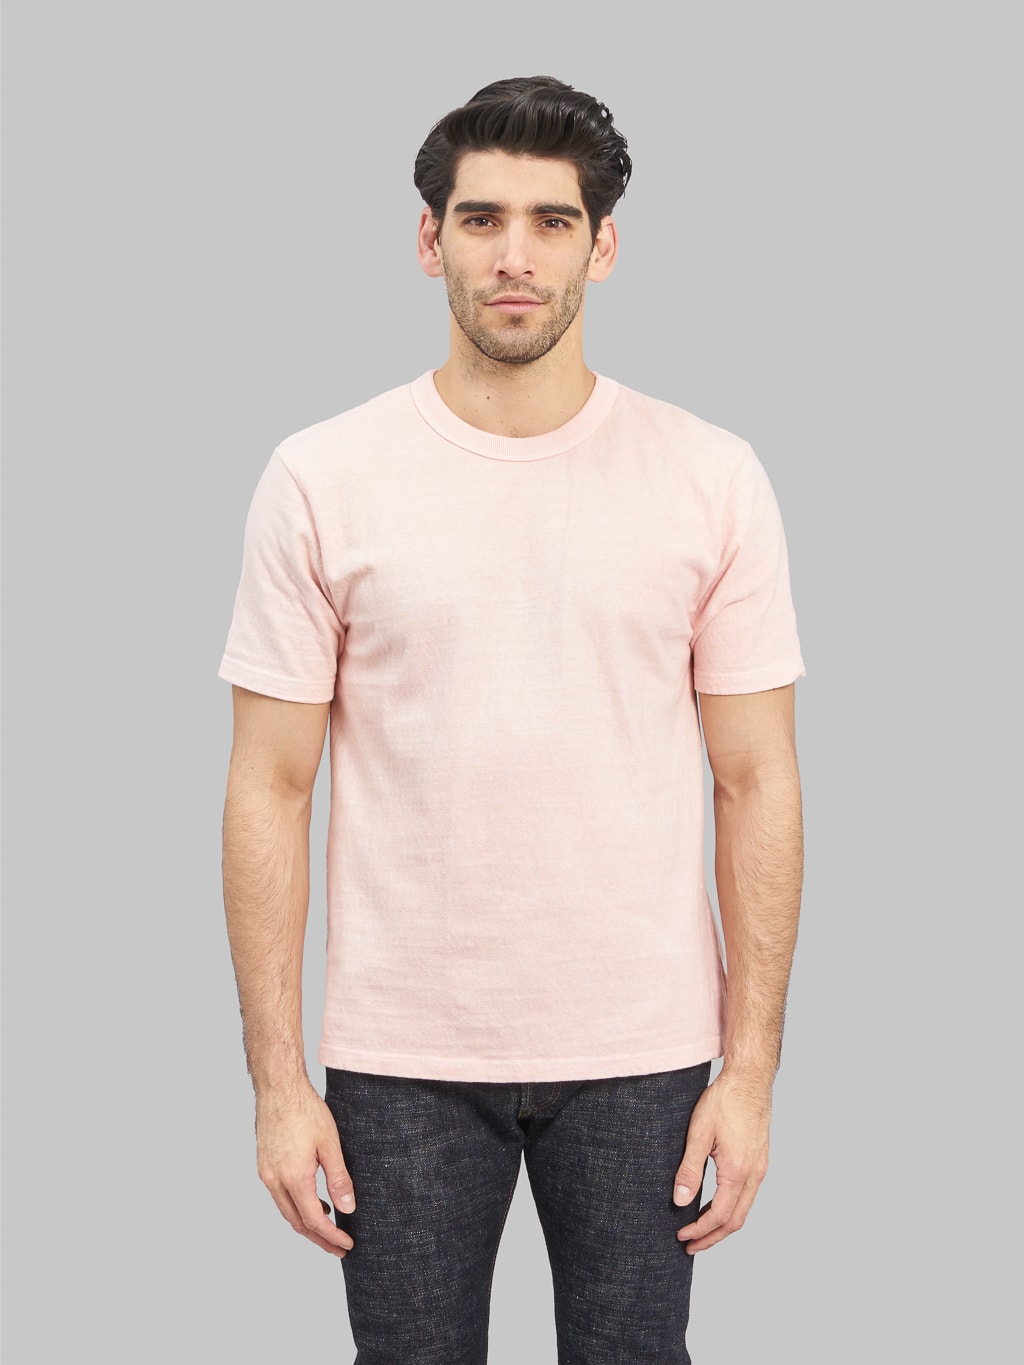 UES N8 Slub Nep Short Sleeve TShirt pink front fit